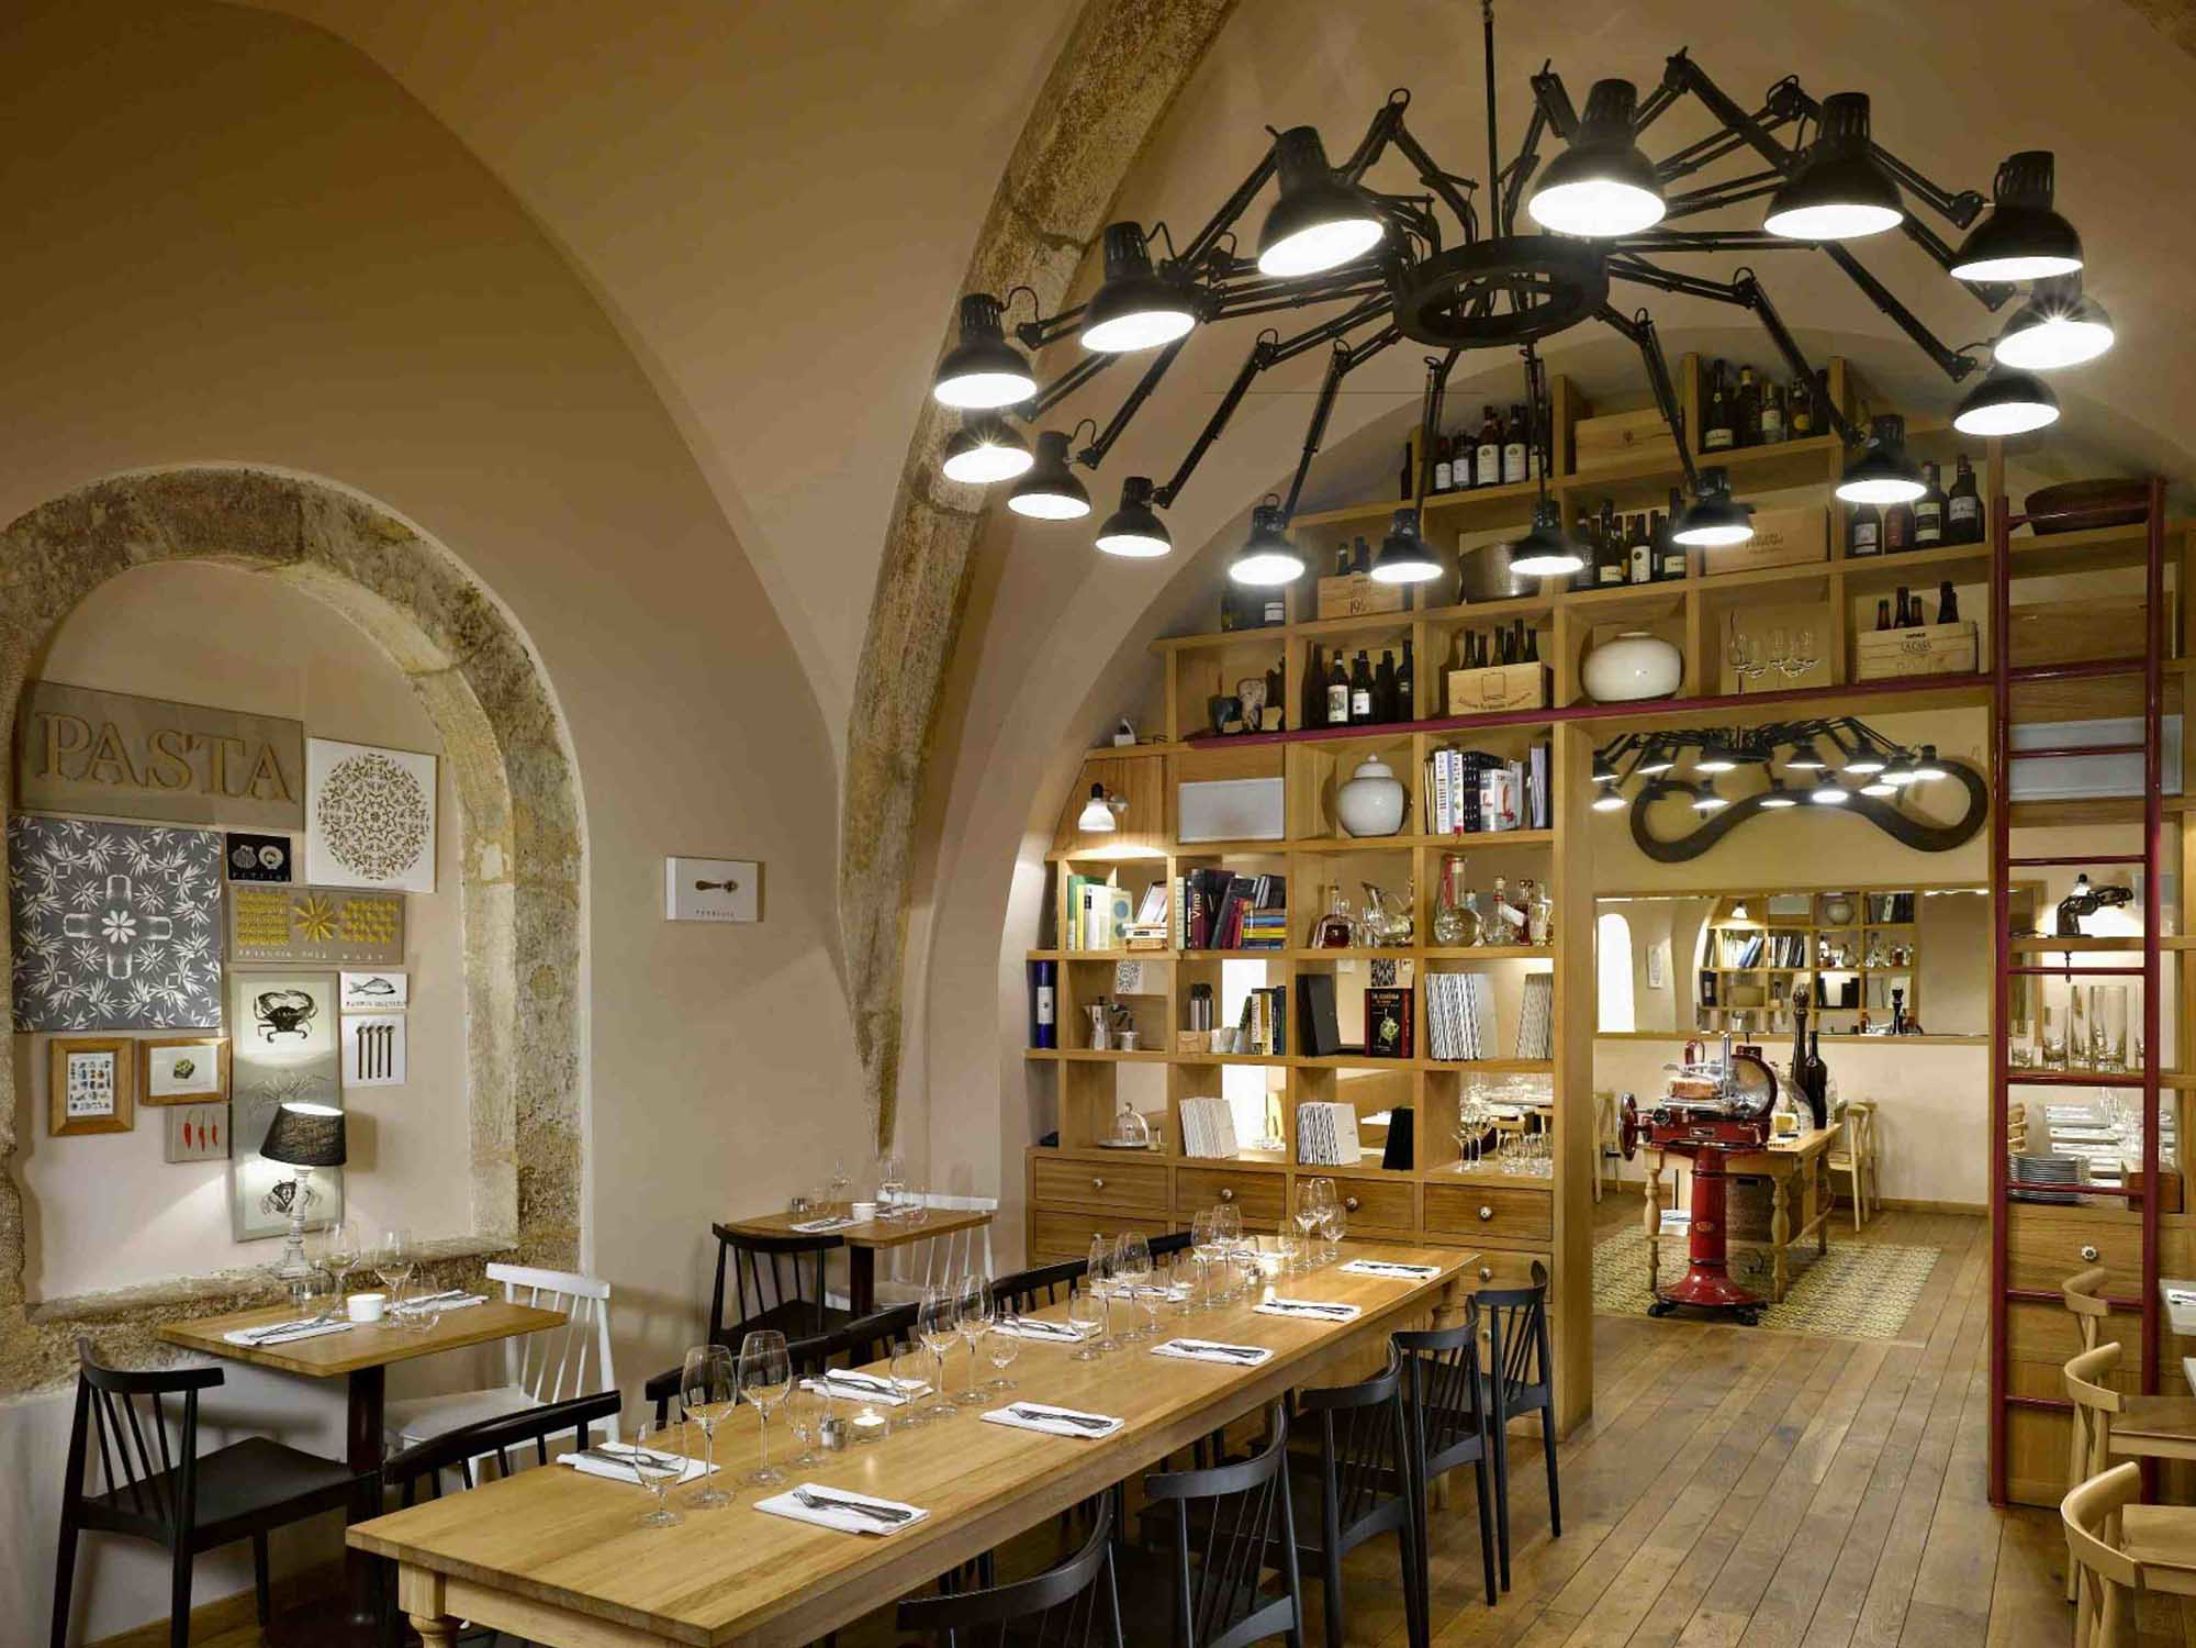 Pasta Fresca - Best Restaurants in Prague